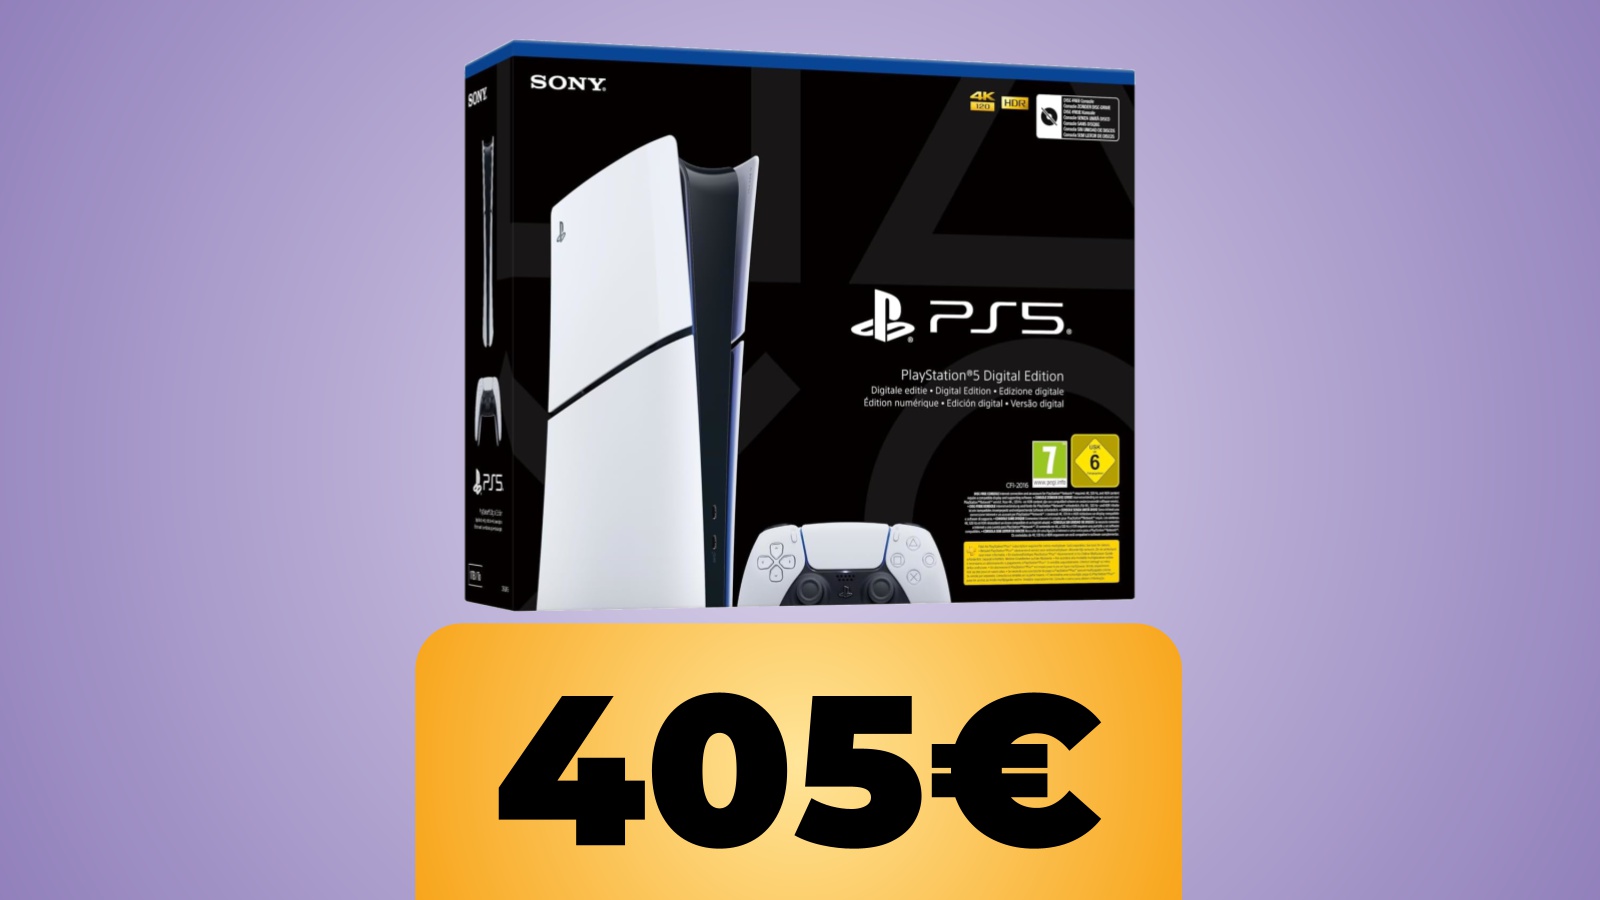 La confezione di PS5 Slim Digital e il prezzo indicato da Amazon